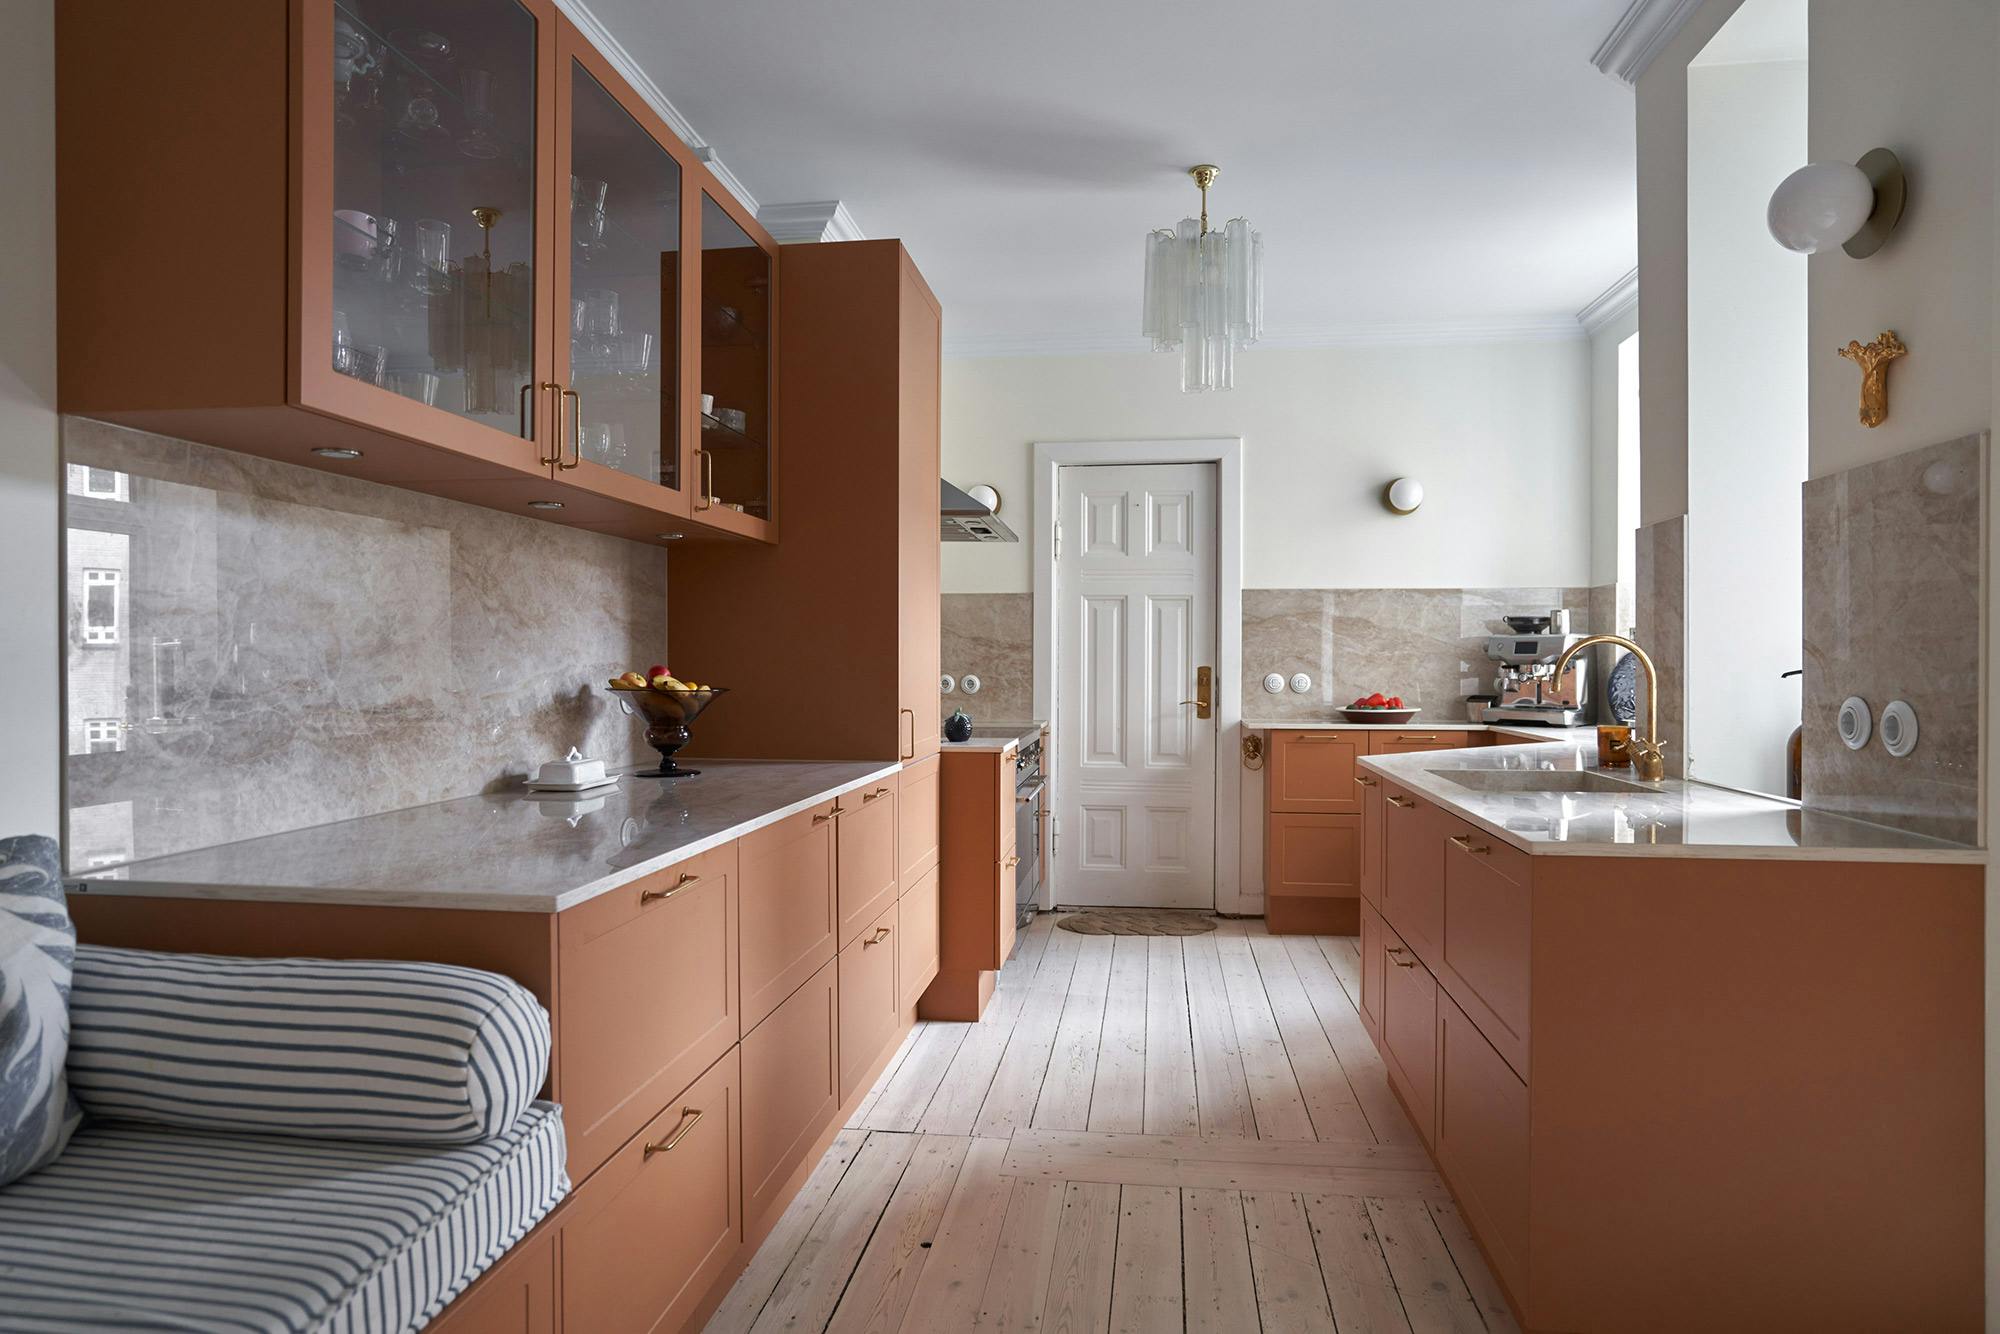 Bildnummer 36 des aktuellen Abschnitts von Luxury Kitchen Design - Italian Kitchen von Cosentino Deutschland